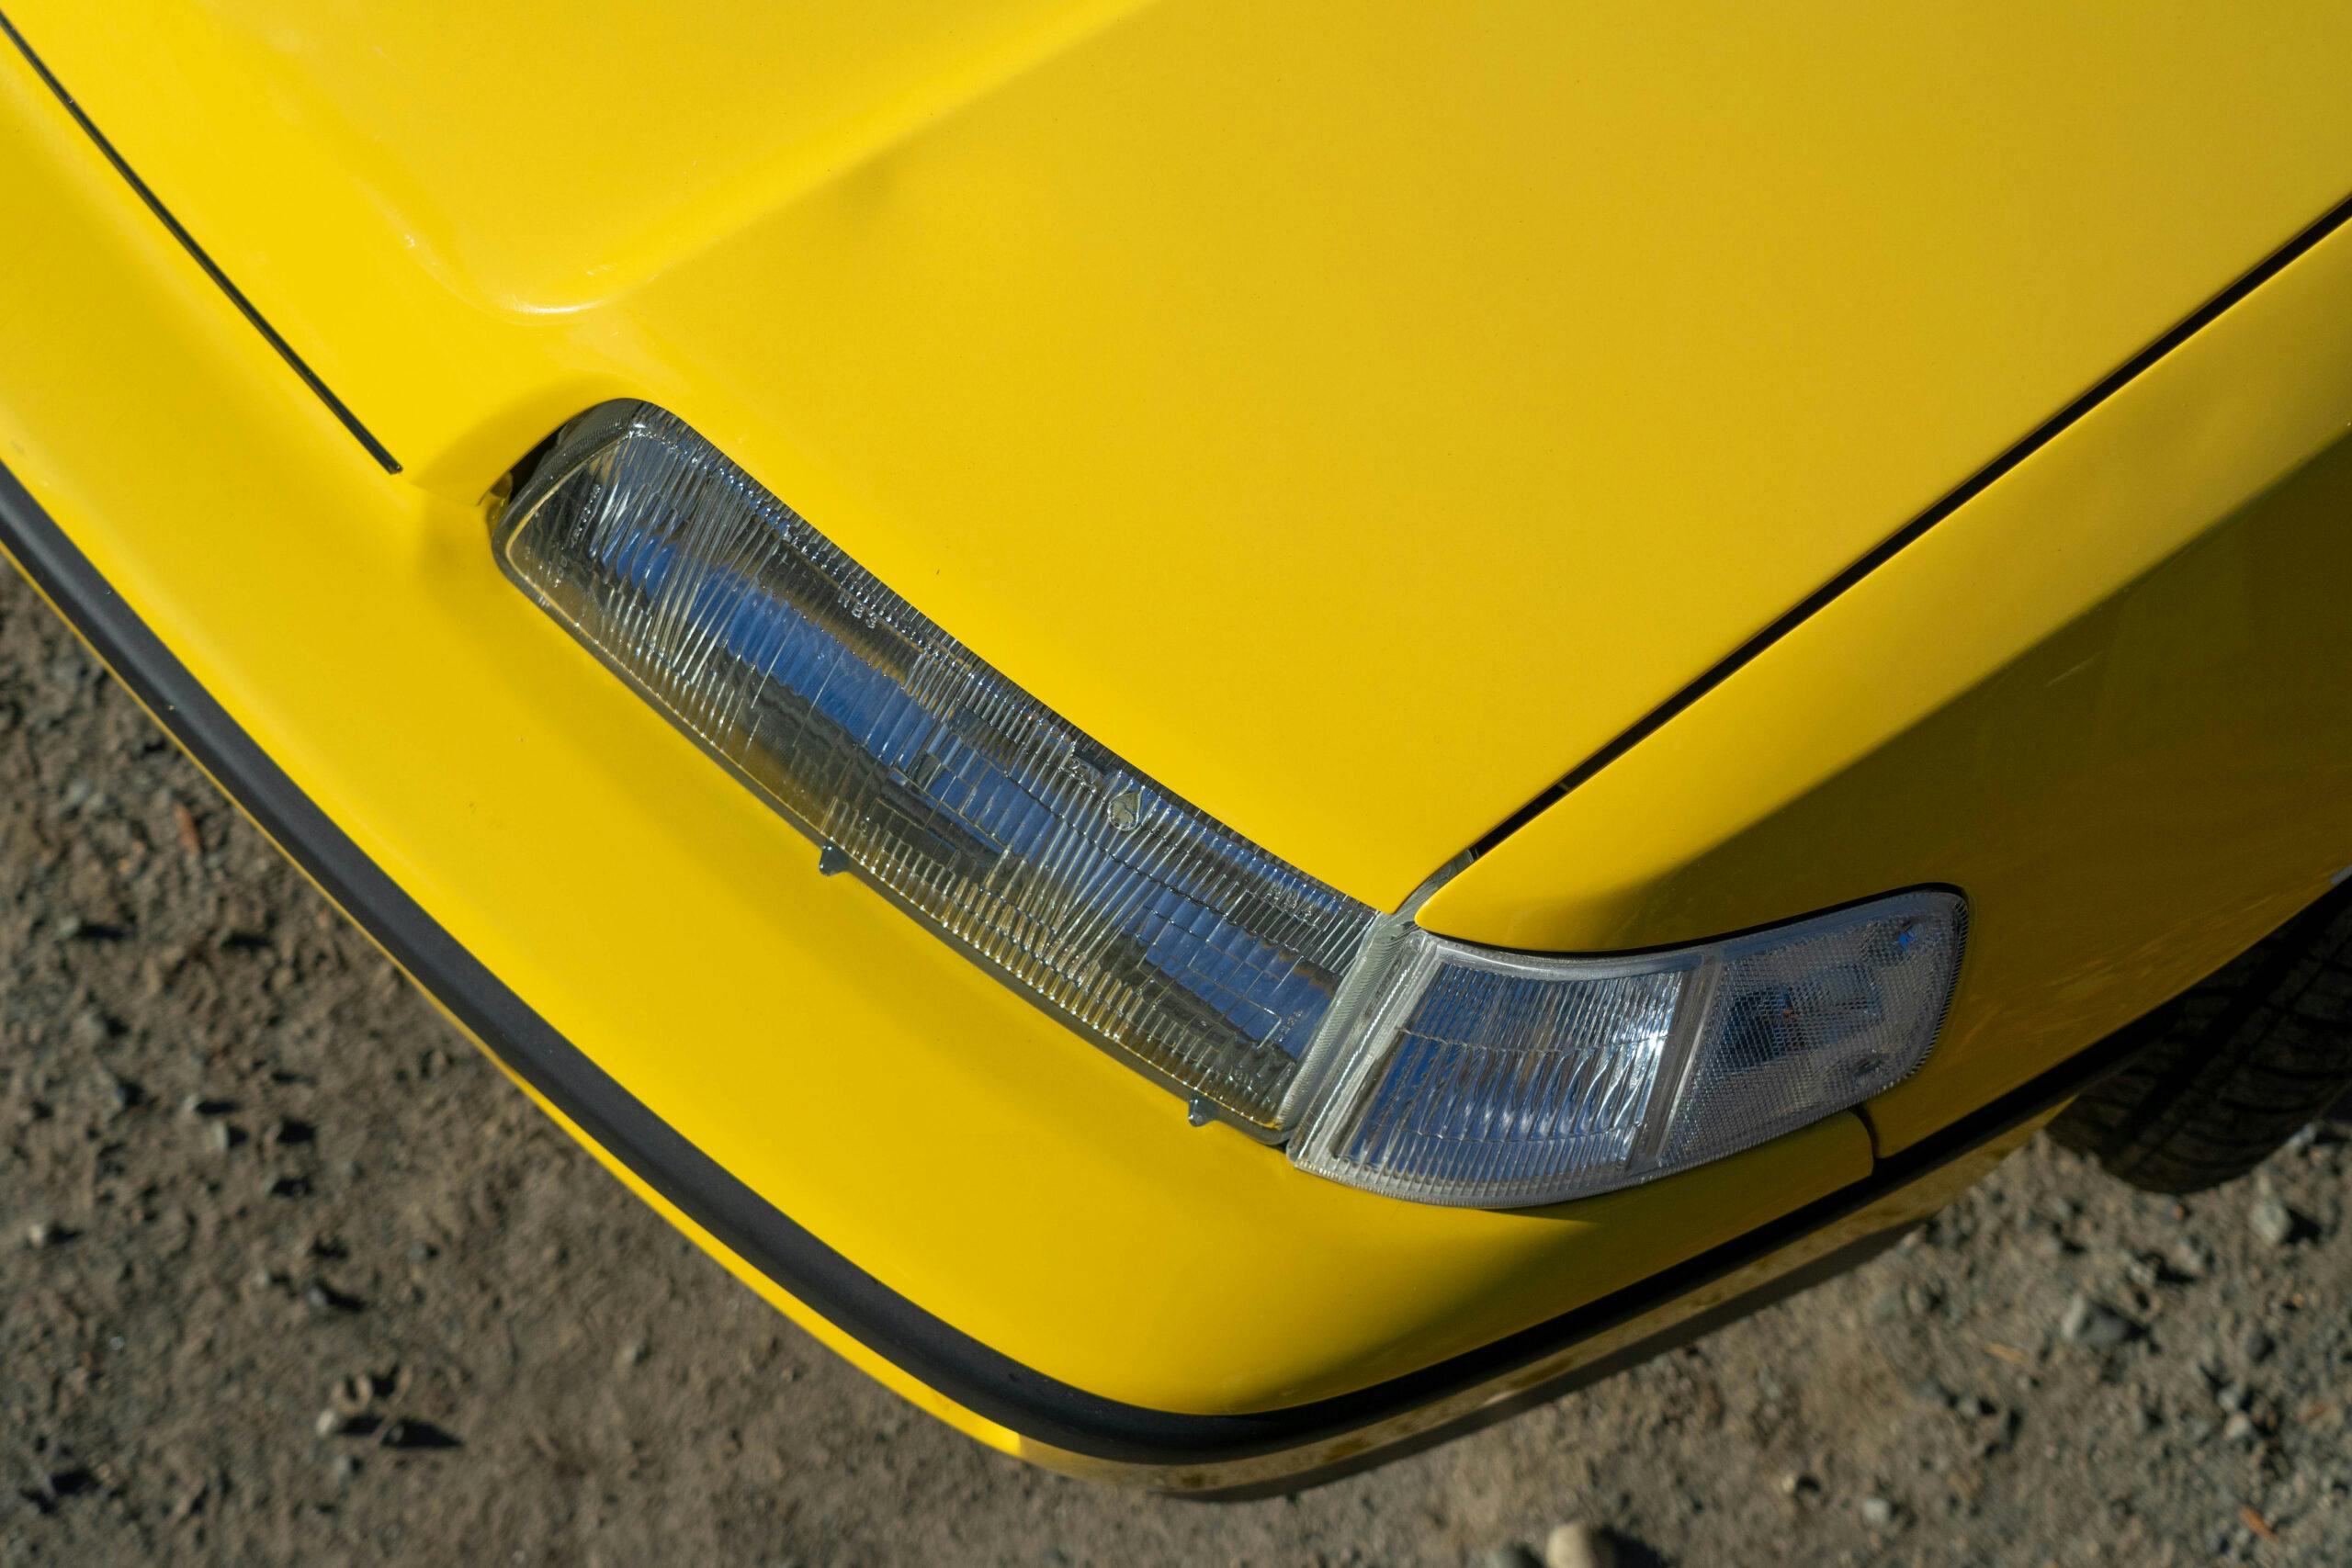 Honda CRX headlight closeup